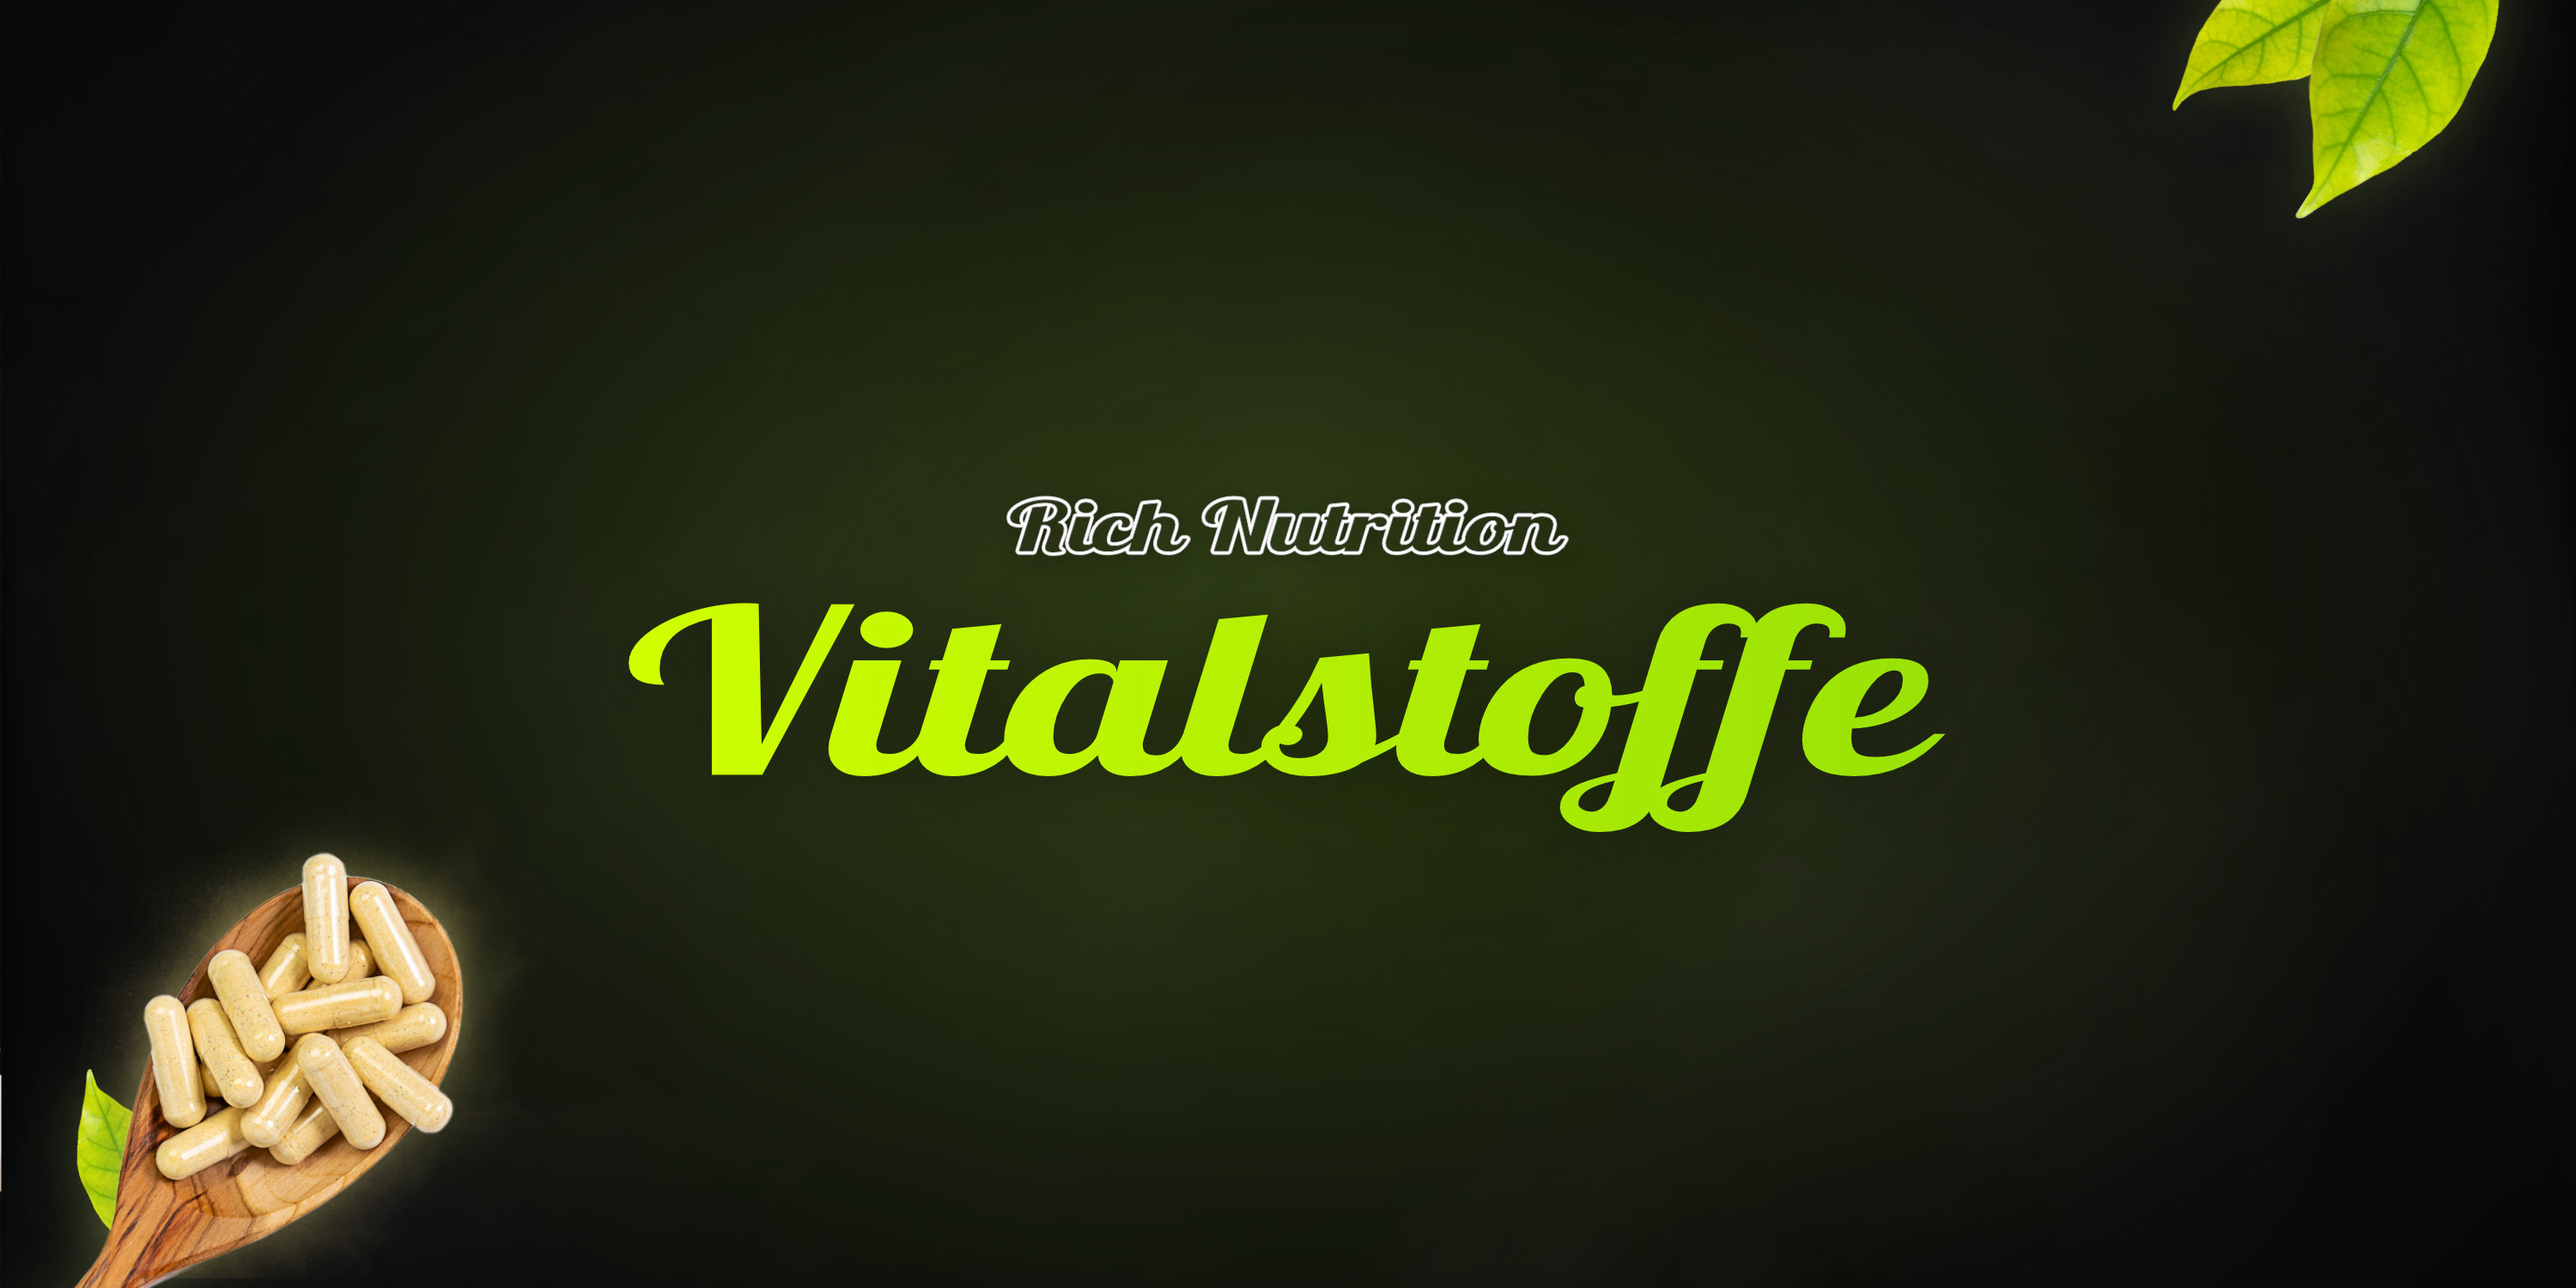 Banner für Vitalstoffe - mobile